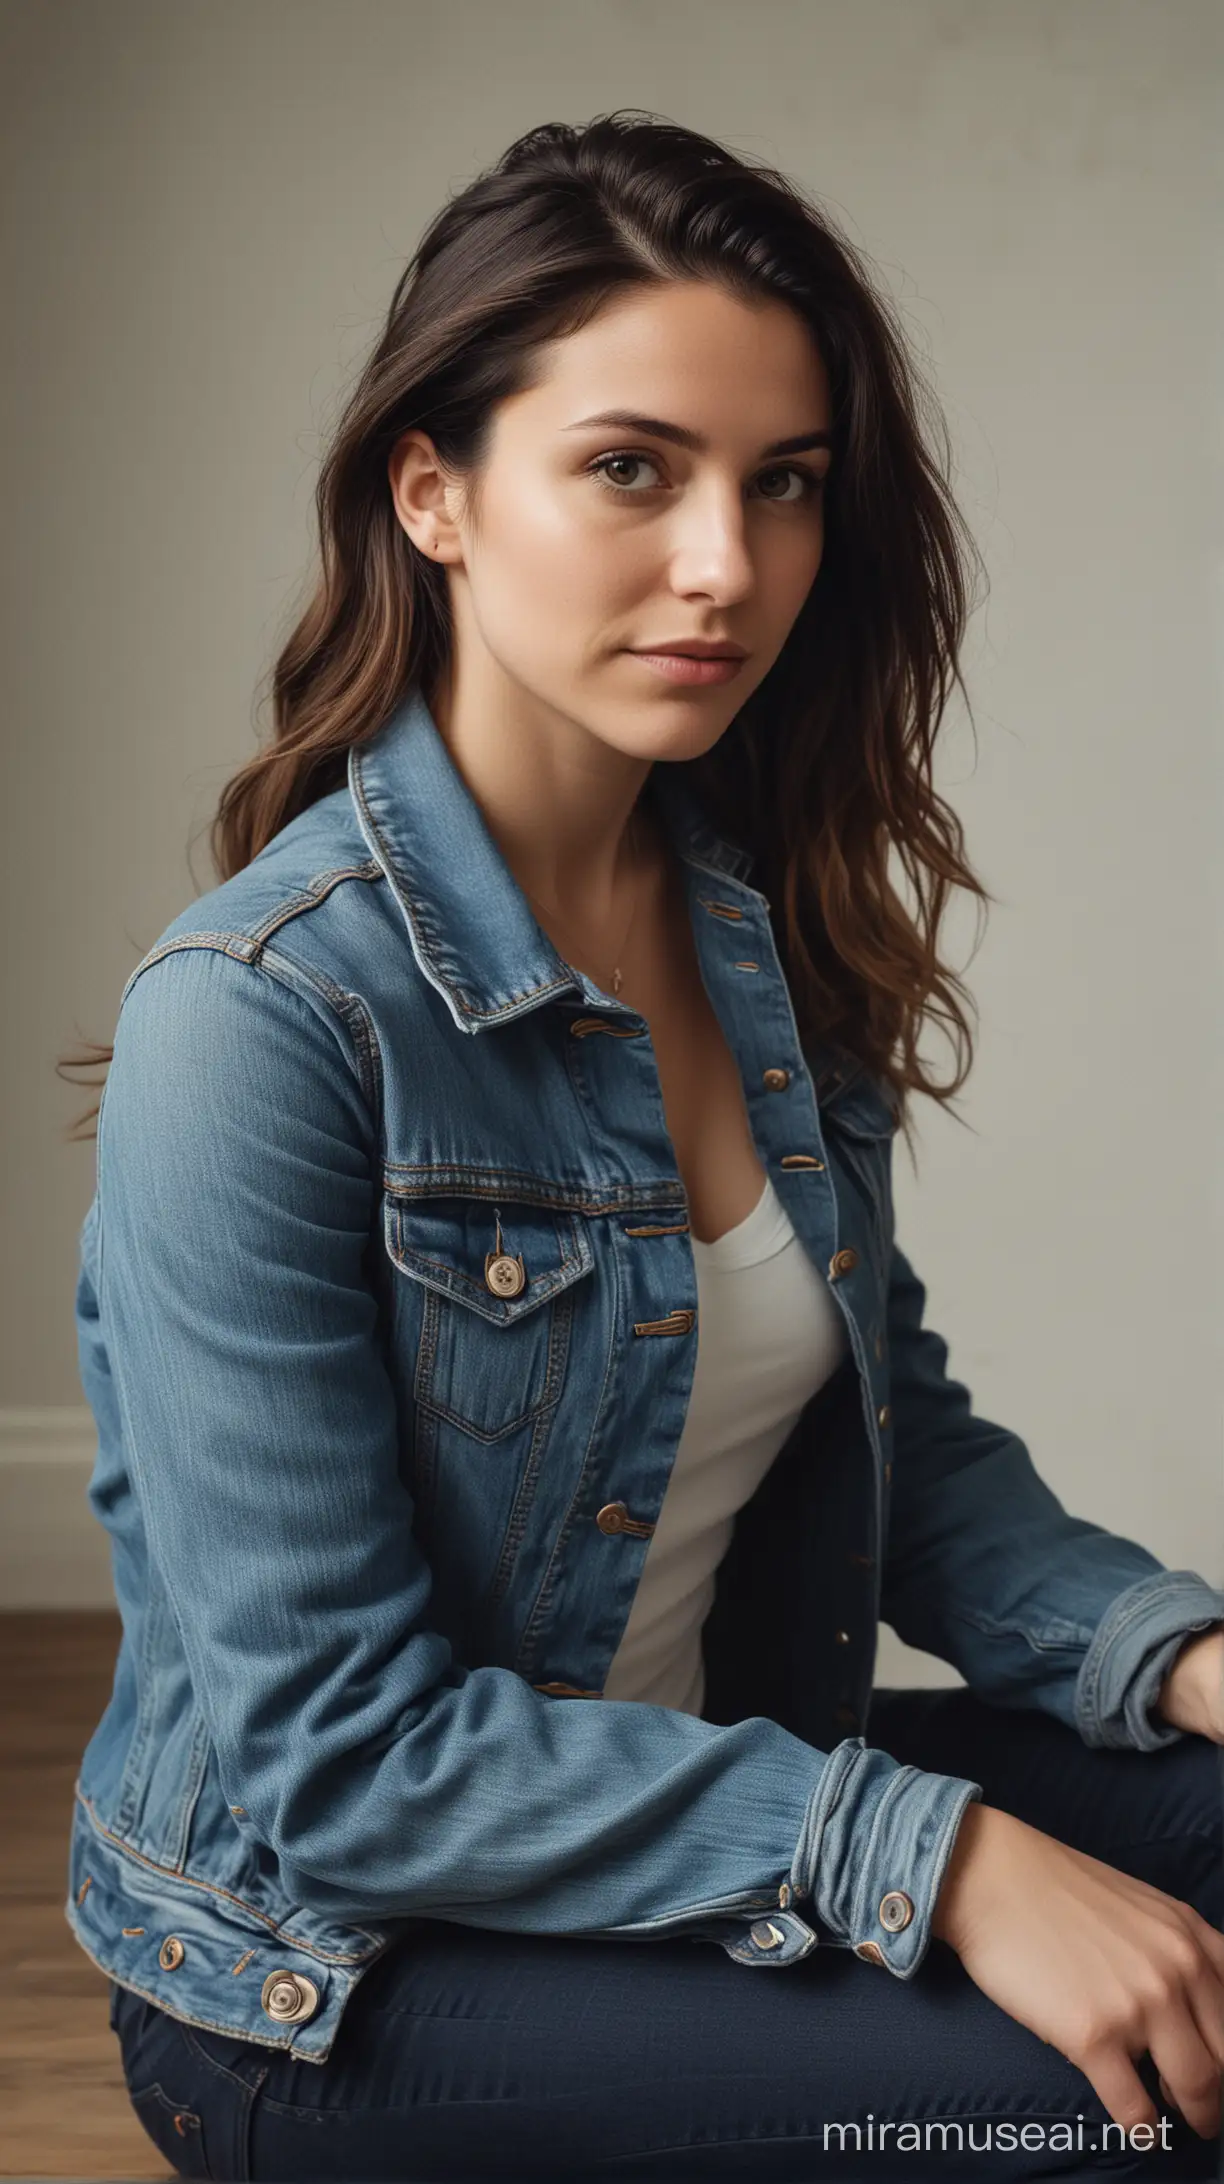 Fotografi sinematik, Seorang perempuan usia 30 tahun memakai jaket jeans dan celana jeans sedang duduk dengan elegan.